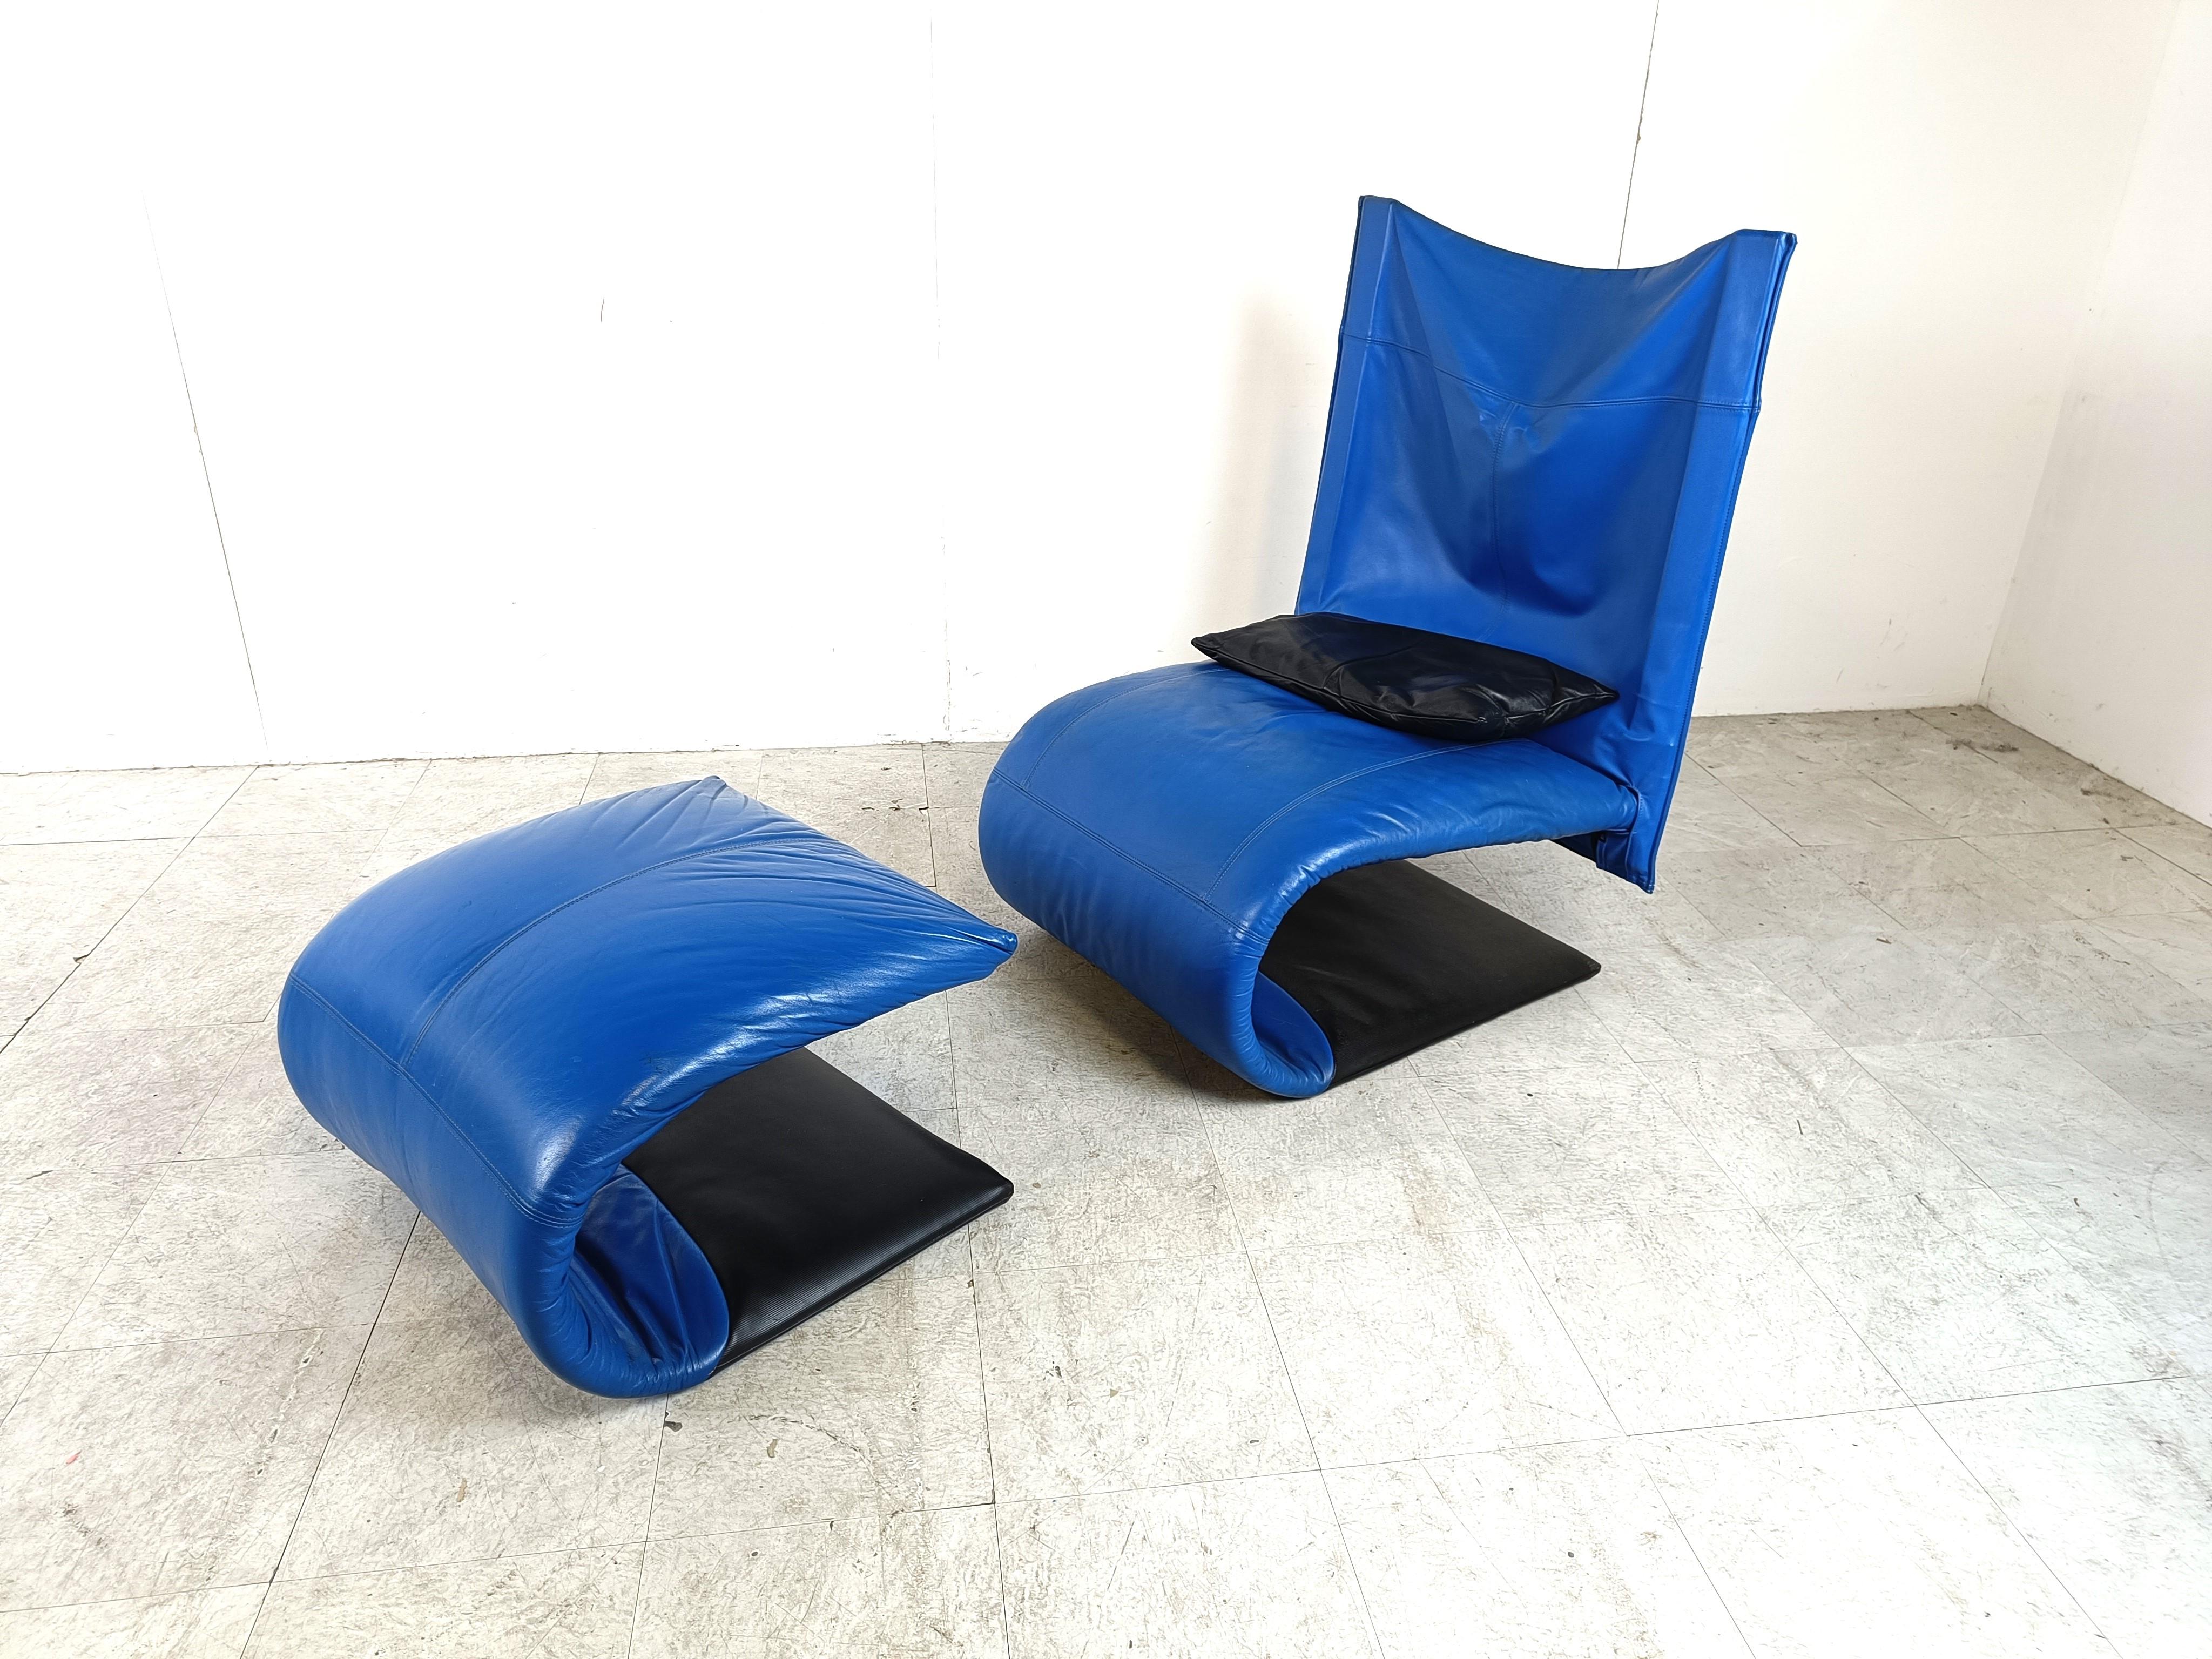 Auffälliger Loungesessel 'Zen' aus schwarzem und blauem Leder mit Ottomane, entworfen von Claude Brison für Ligne Roset.

Dieses Loungesofa ist mit schwarzen Lederkissen ausgestattet, sehr bequem und hat ein modernes Design.

Guter Zustand und